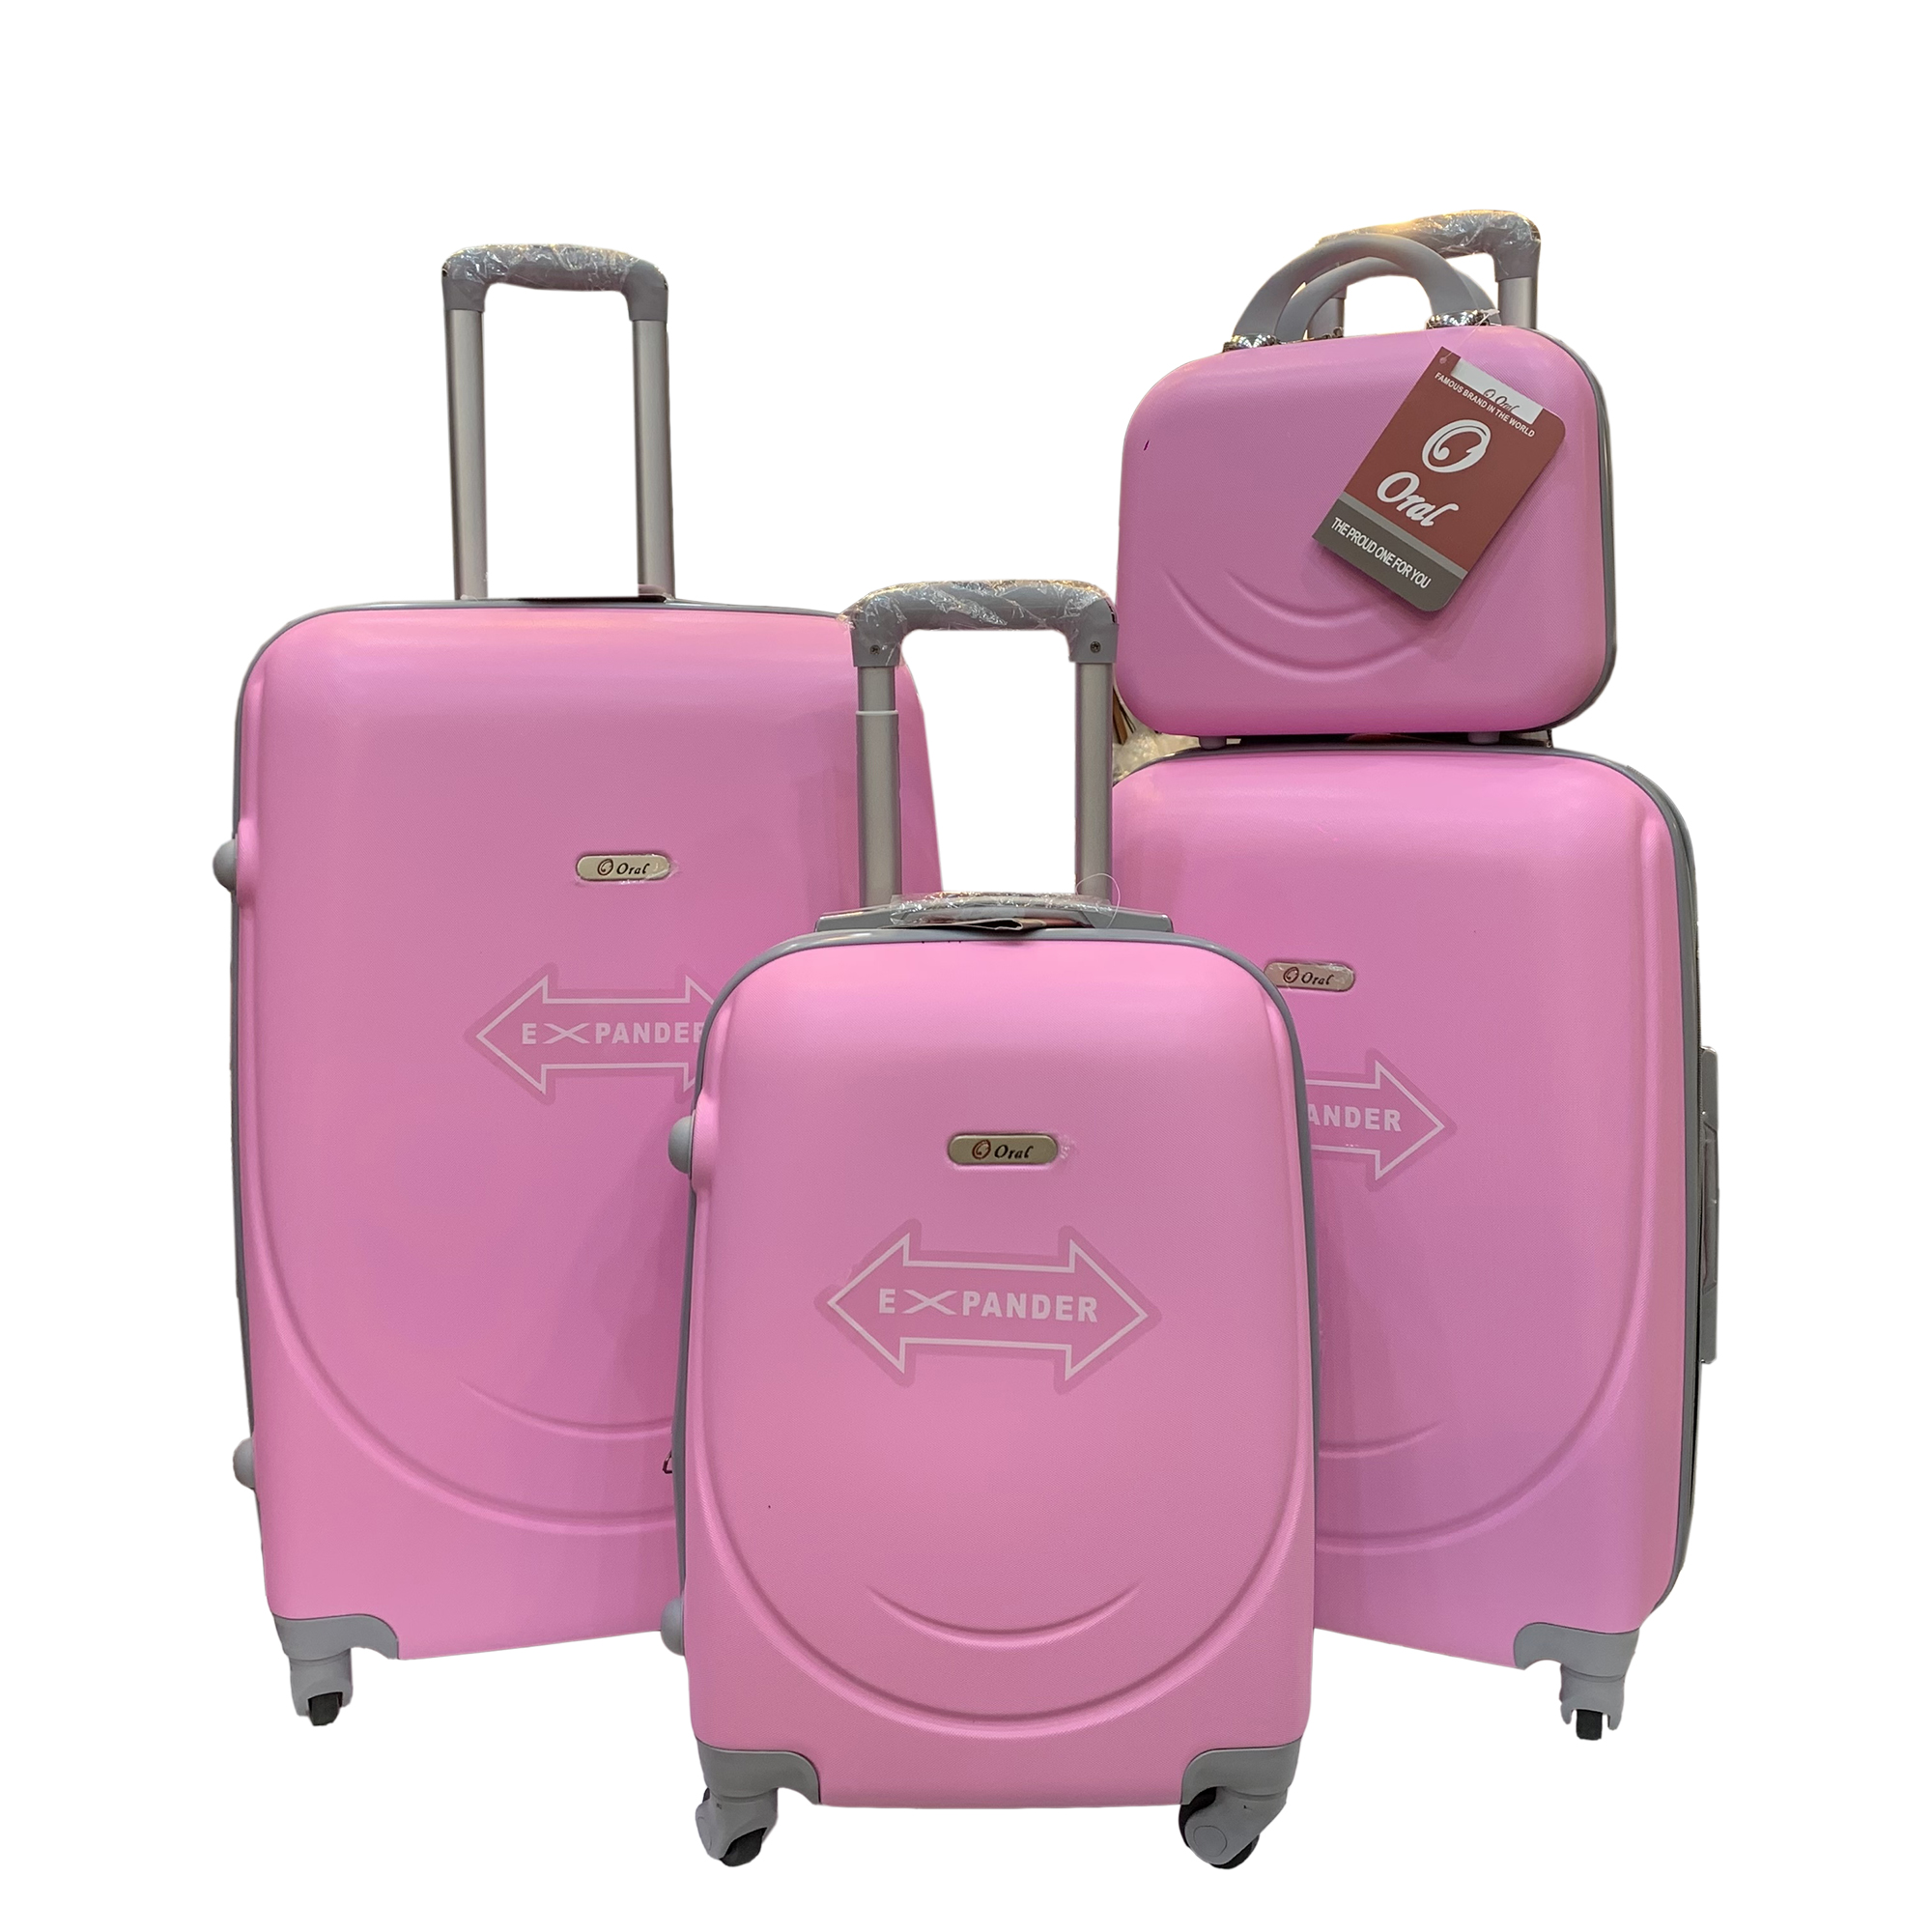 نکته خرید - قیمت روز مجموعه چهار عددی چمدان اورال مدل C0117 خرید